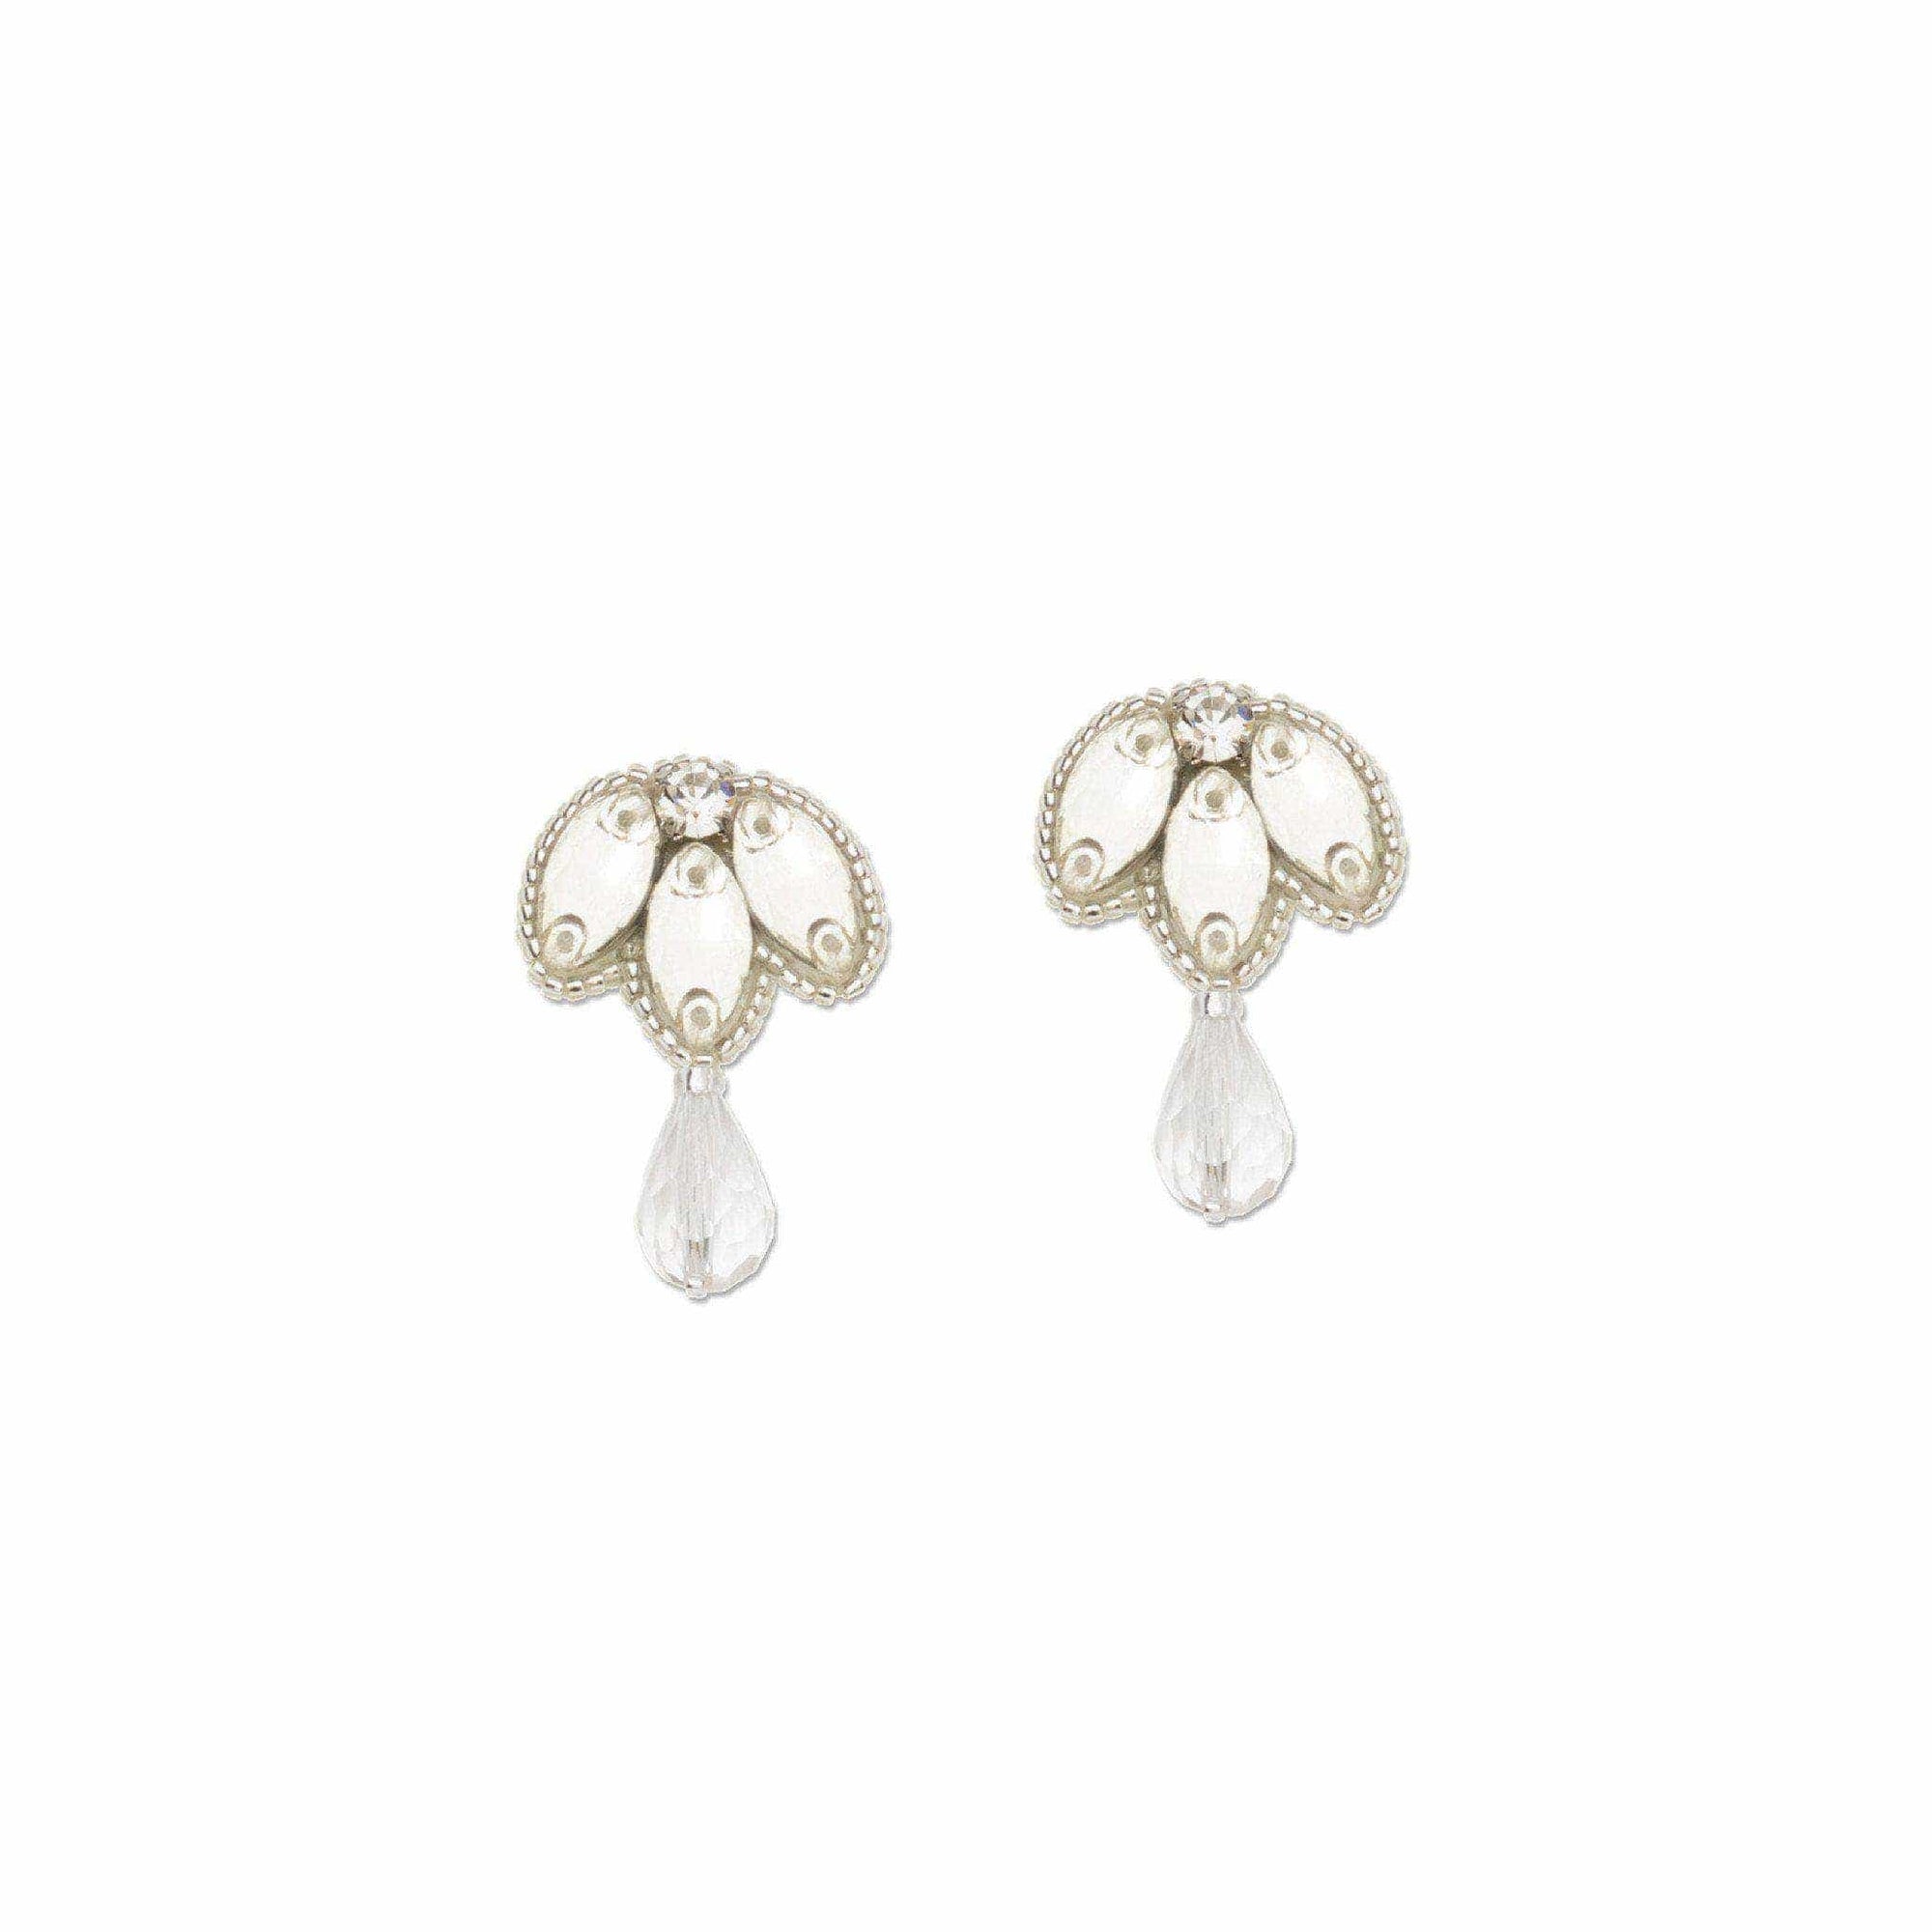 Wedding Earring Silver Silver crystal drop wedding earrings - 'Ava'